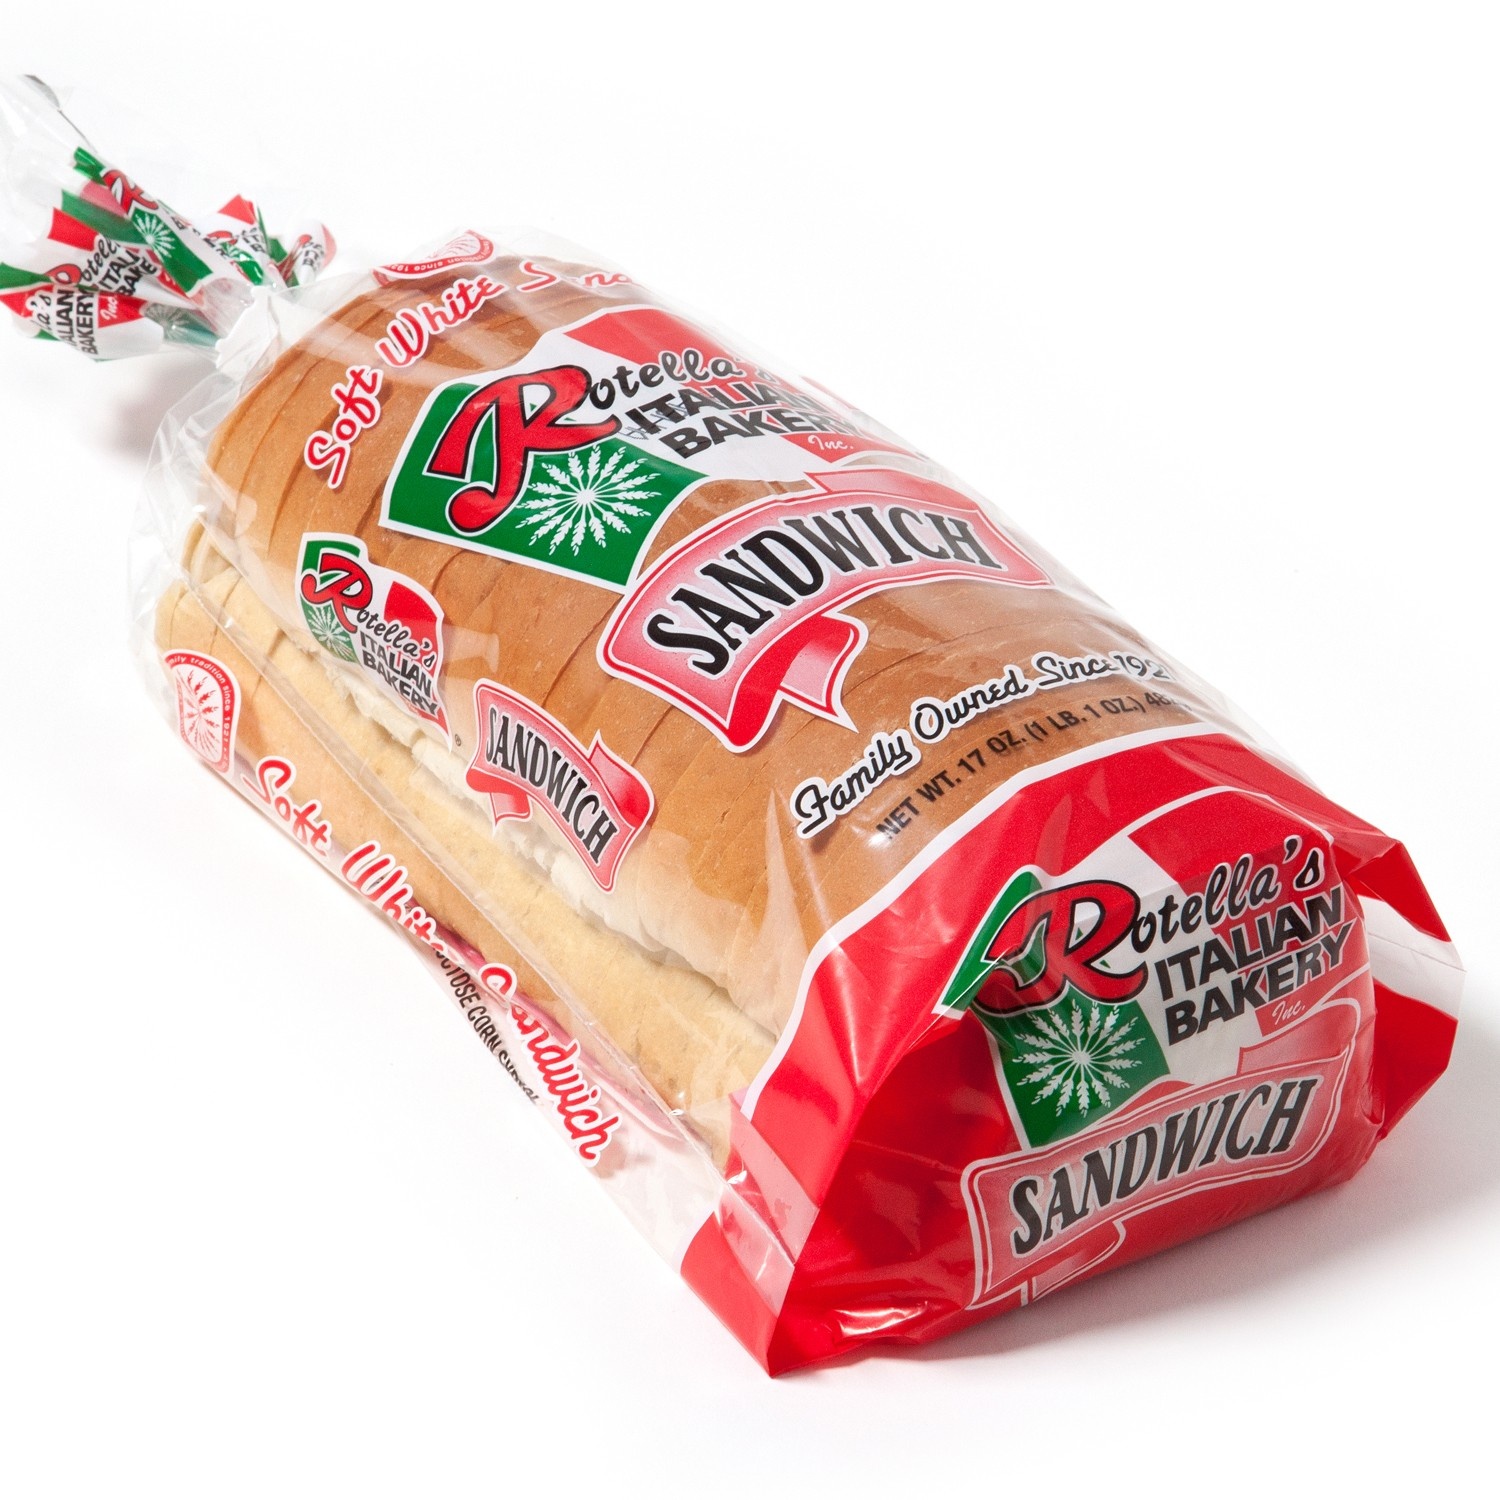 slide 1 of 1, Rotella's Italian Bakery Sandwich Bread, 17 oz